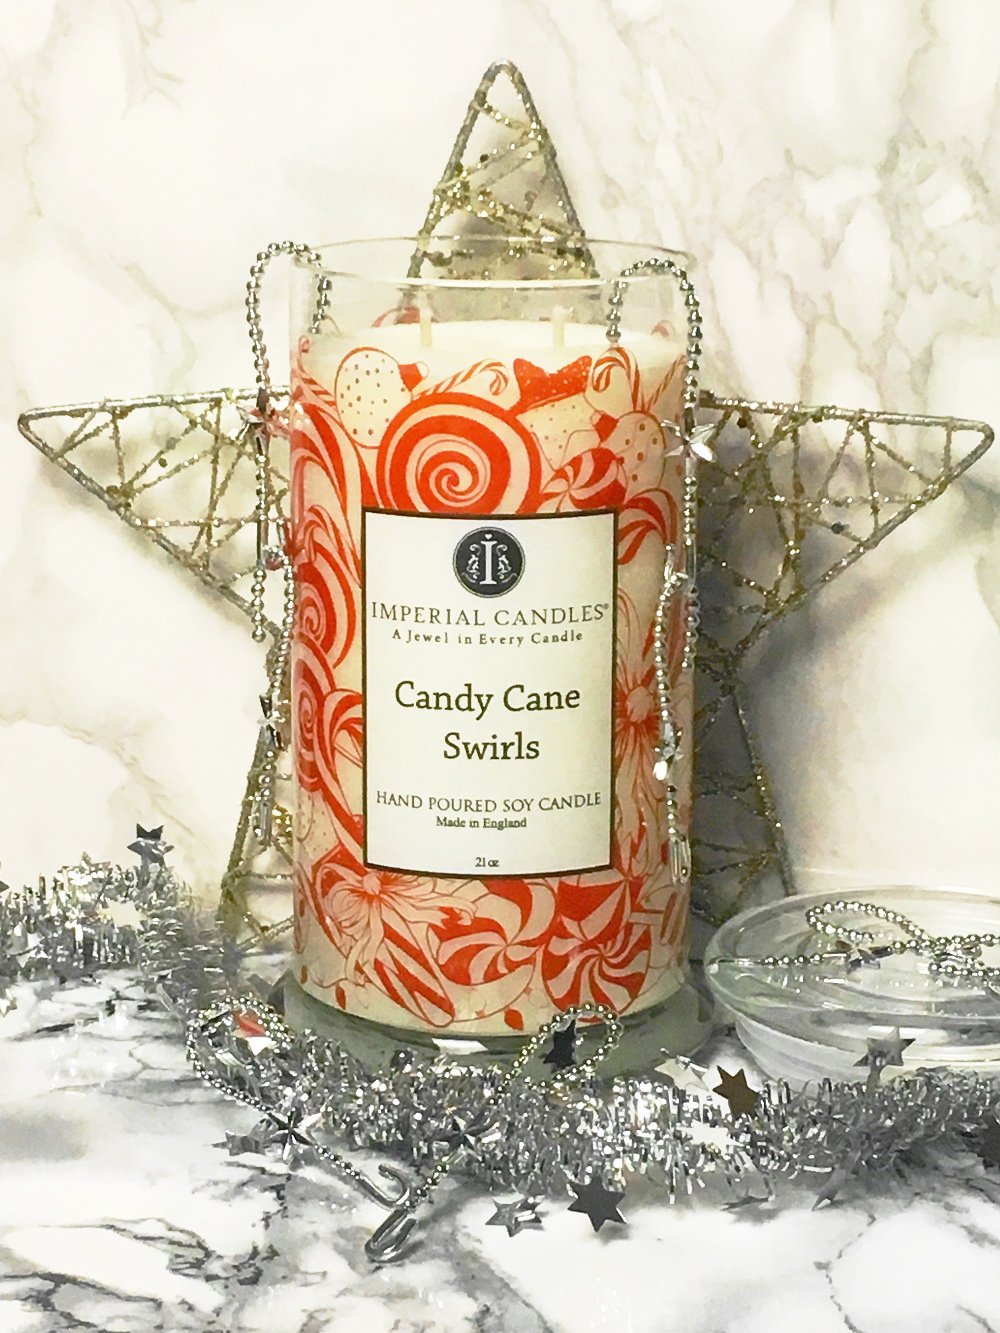 Heute zeige ich euch auf meinem Blog eine wunderschöne Duftkerze und kunterbunte weihnachtliche Badebomben mit sehr hübschem Schmuck von Imperial Candles